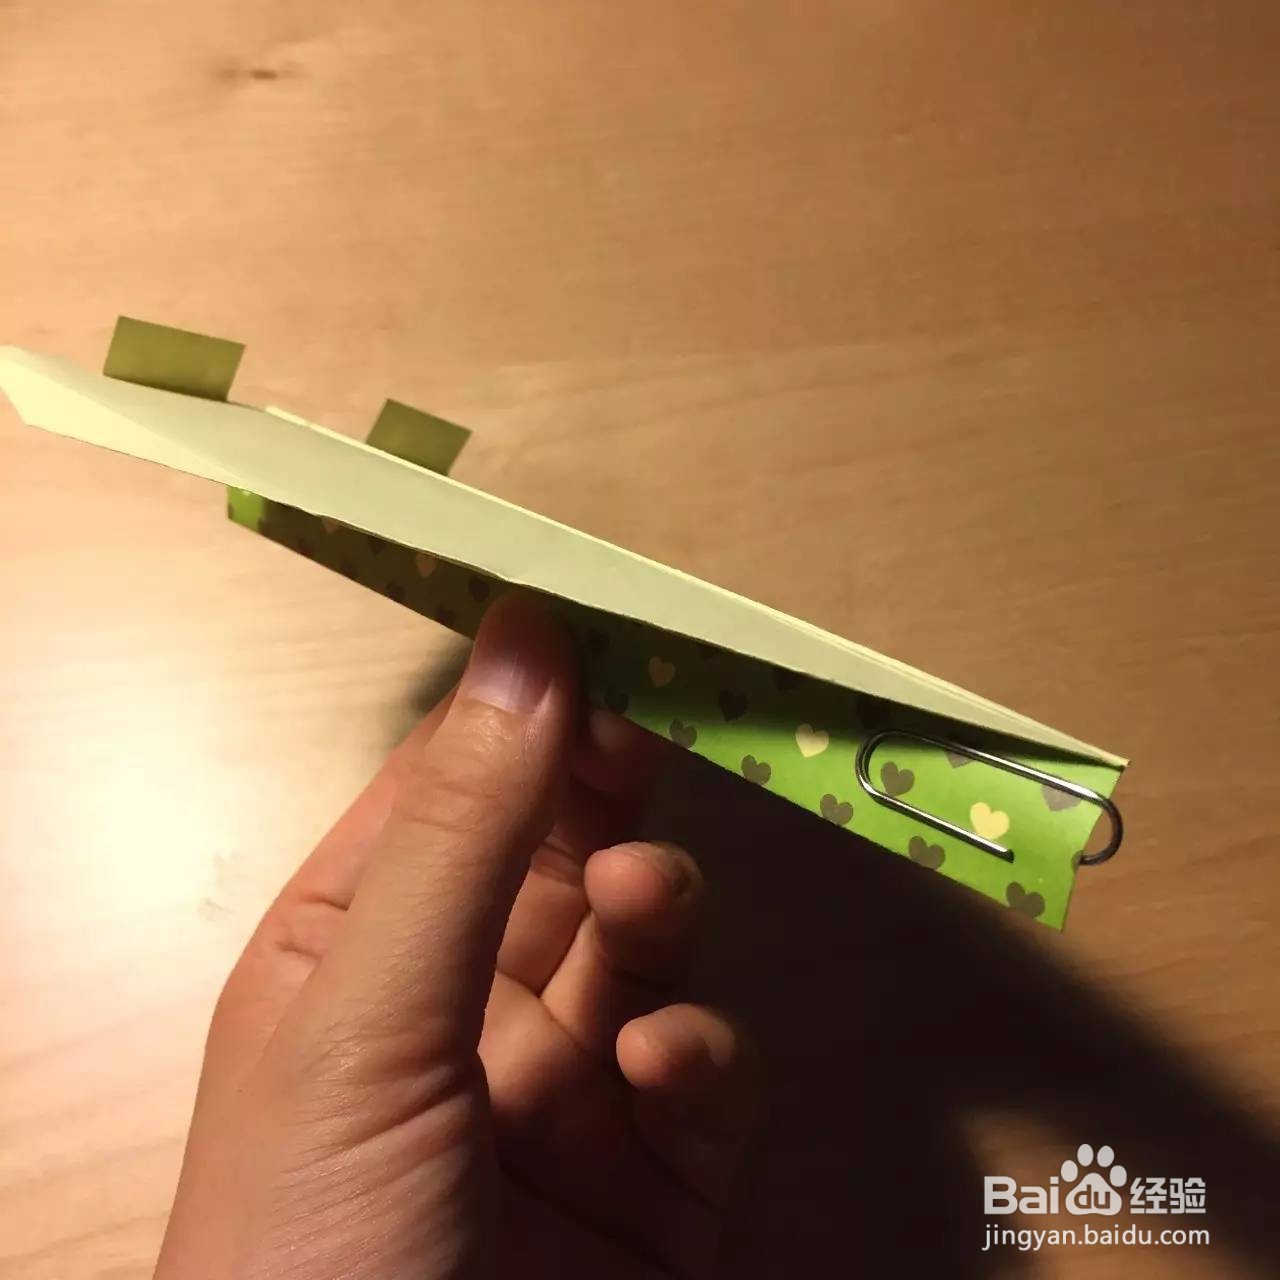 弹力纸飞机制作方法